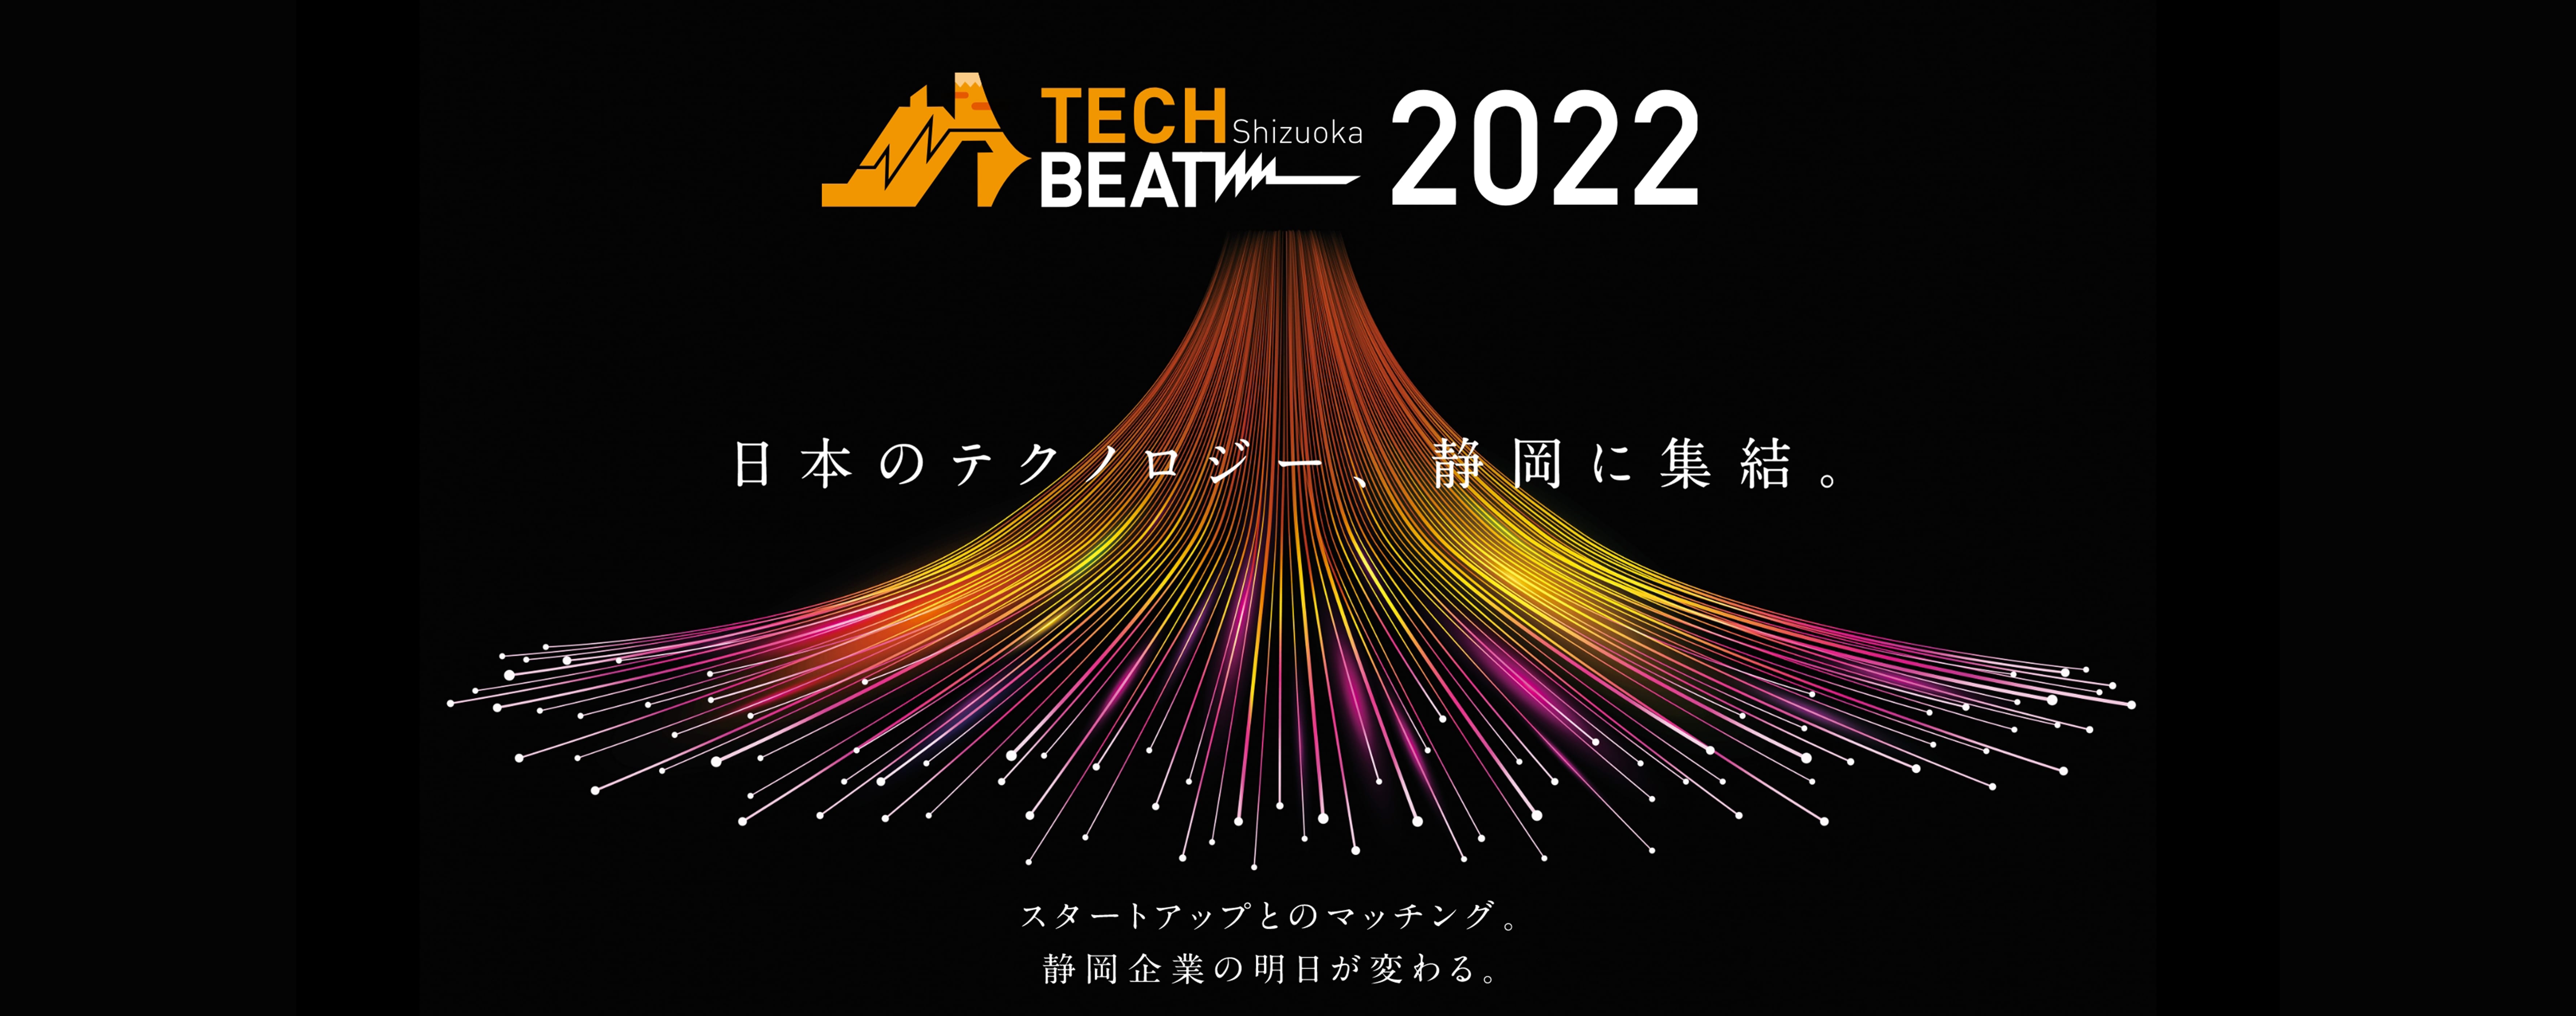 TECH BEAT Shizuoka 2022